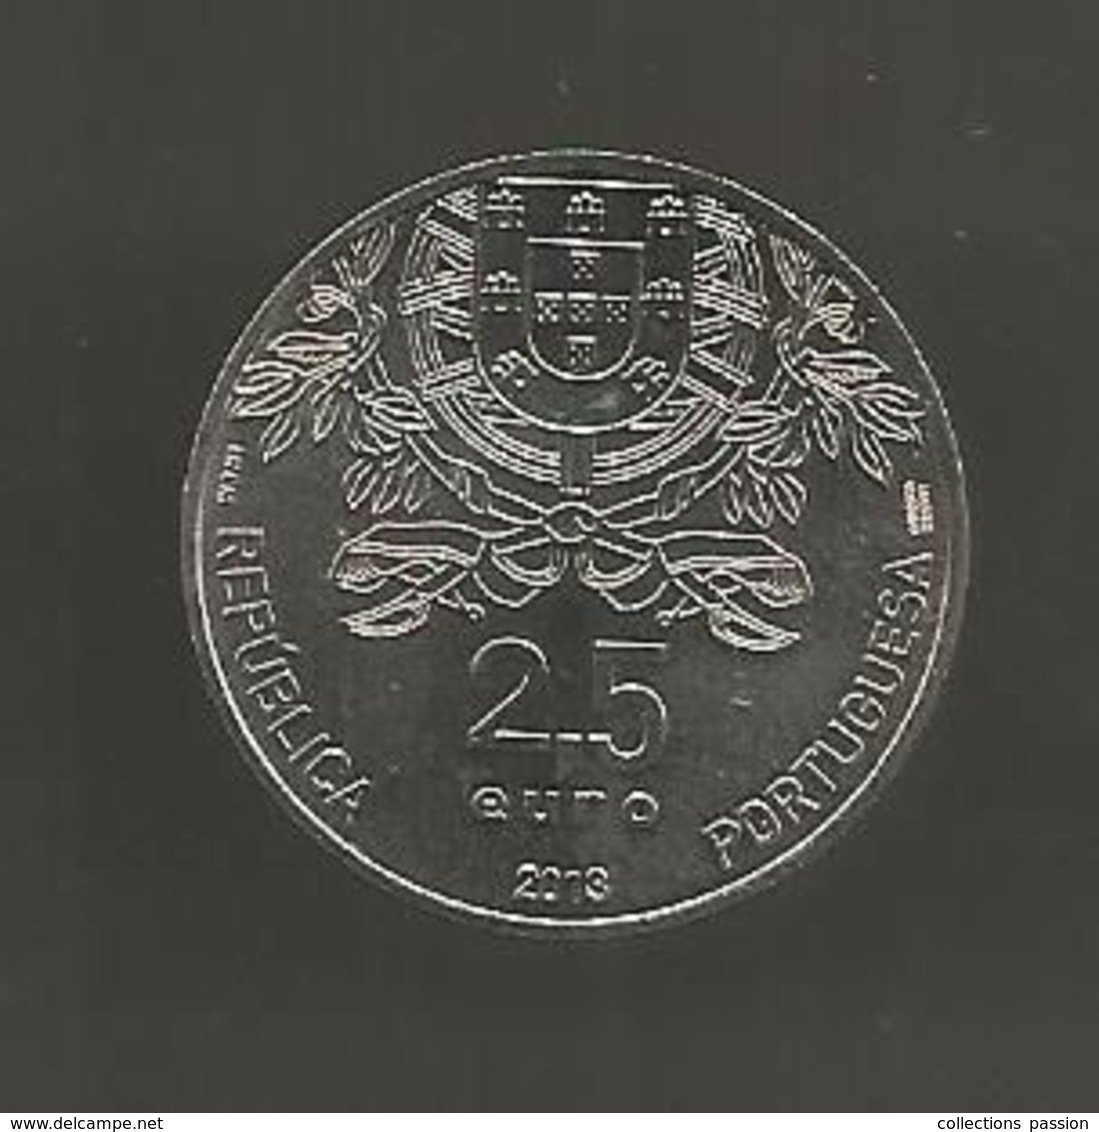 Monnaie Commémorative , EURO , Portugal , 150 Anos Cruz Vermelha ,1863-2013 , 2.5 €, Republica Portuguesa, 3 Scans - Portugal